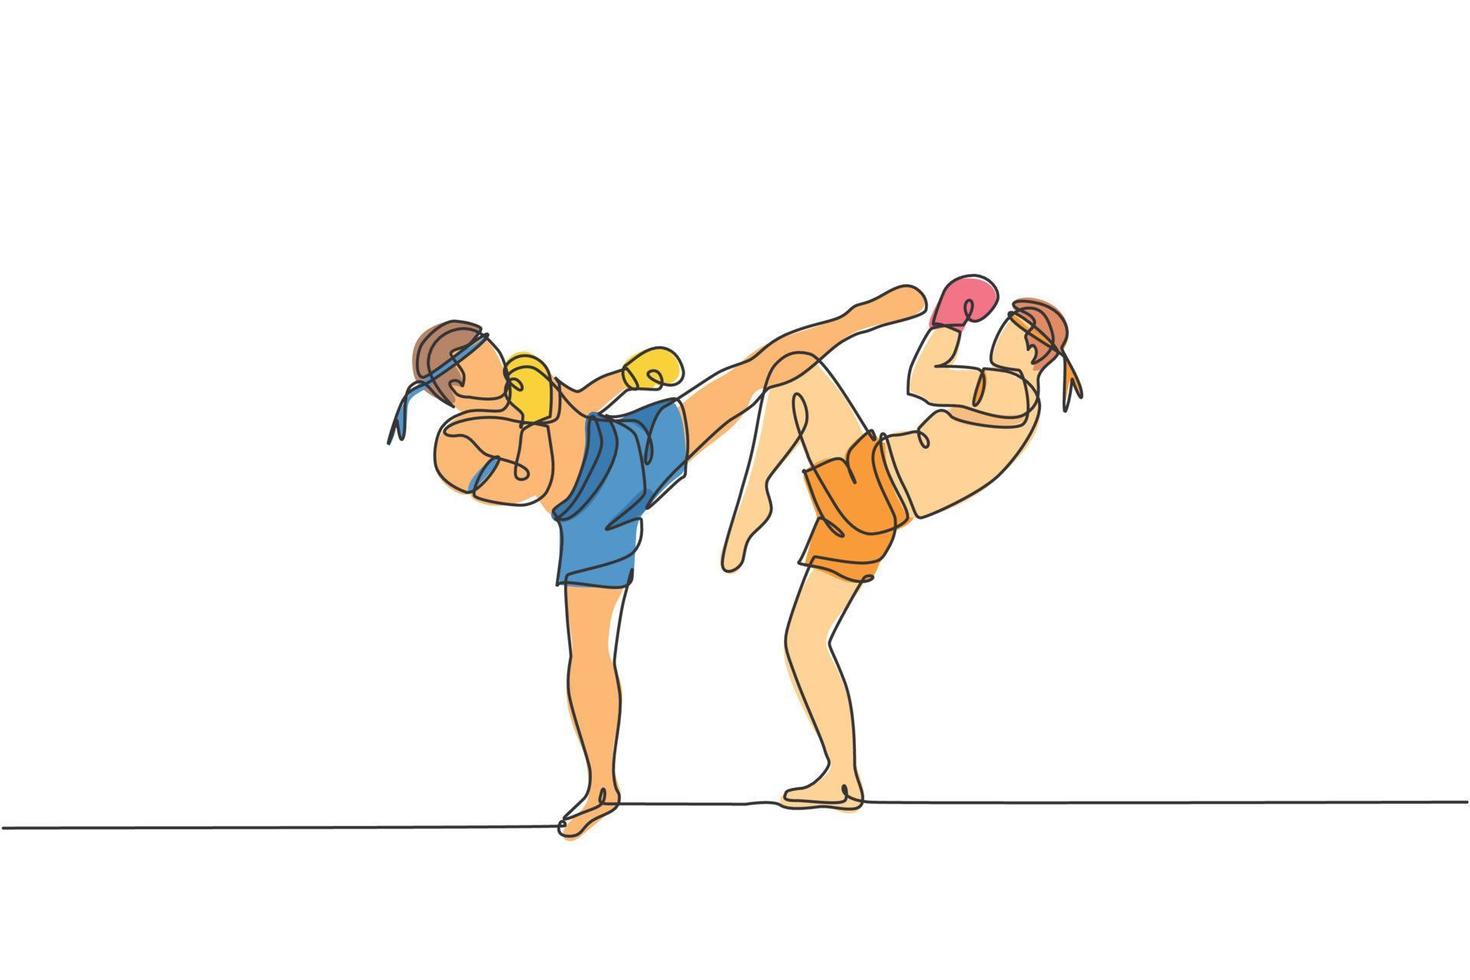 único desenho de linha contínua de dois jovens esportivos treinando boxe tailandês no centro do clube de ginástica. conceito de esporte muay thai combativo. evento de competição. ilustração em vetor design de desenho de uma linha na moda